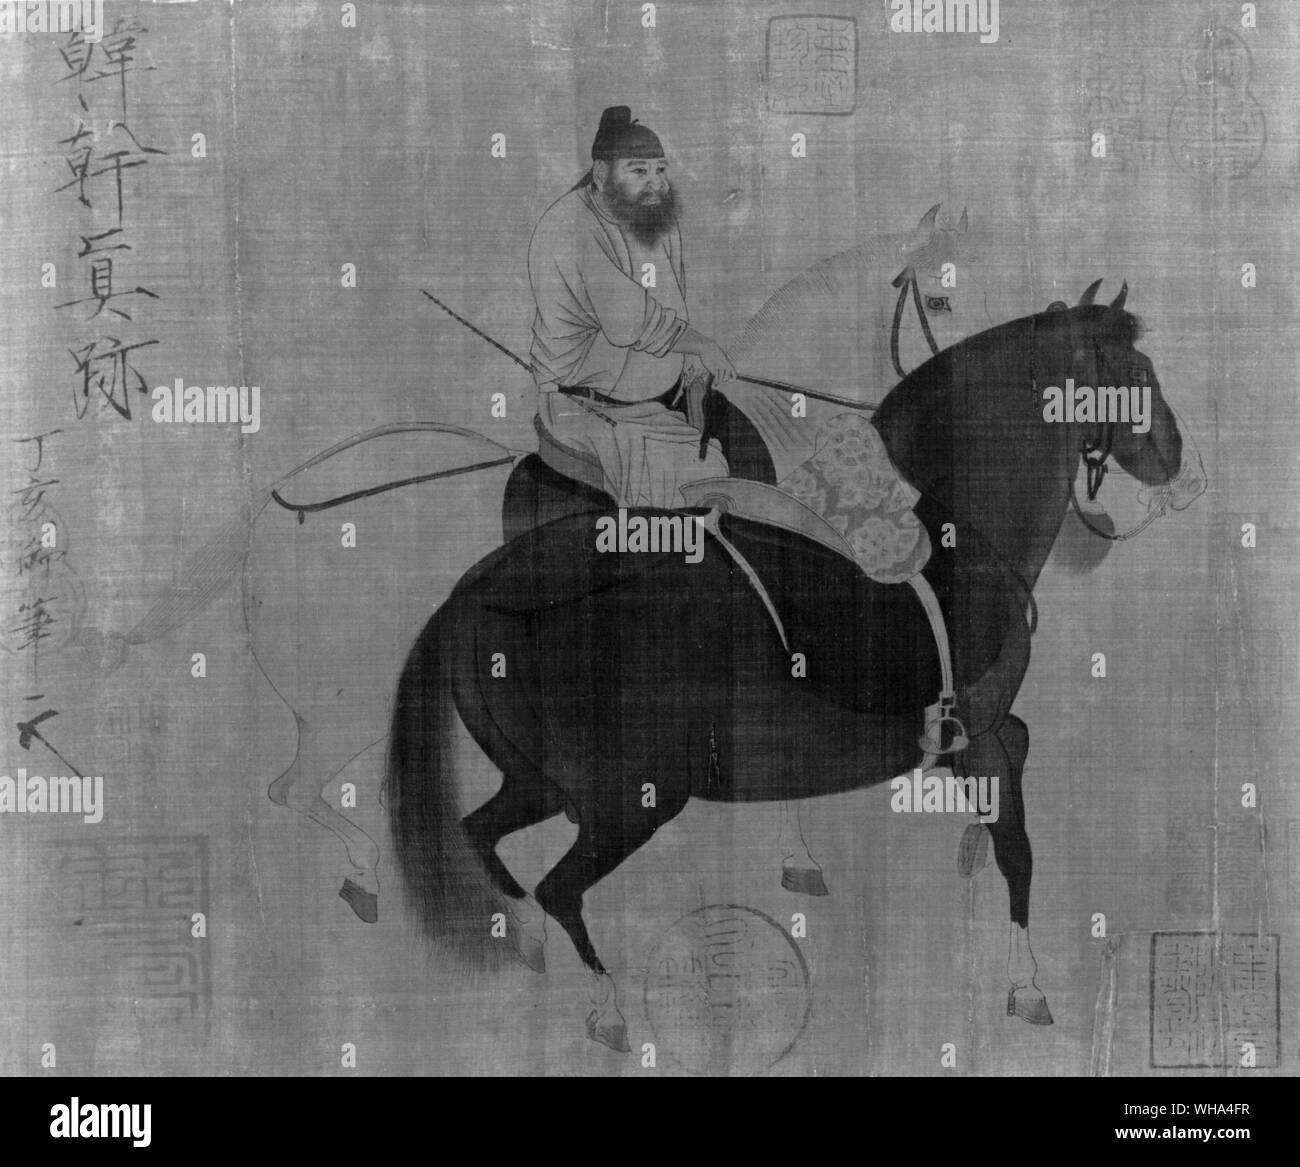 Han Kan. Tang Maler 618-906. Han-Kan lebte in Chang-an, die Hauptstadt der Tang-dynastie (618-907). Er malte buddhistischen und taoistischen Wandmalereien wurde aber vor allem bekannt für seine großen Kompositionen von Pferd Gemälde, die die ritterlichen Geist seiner Zeit dargestellt. Er gilt als einer der größten klassischen chinesischen Meister Künstler tierischen Malerei. Stockfoto